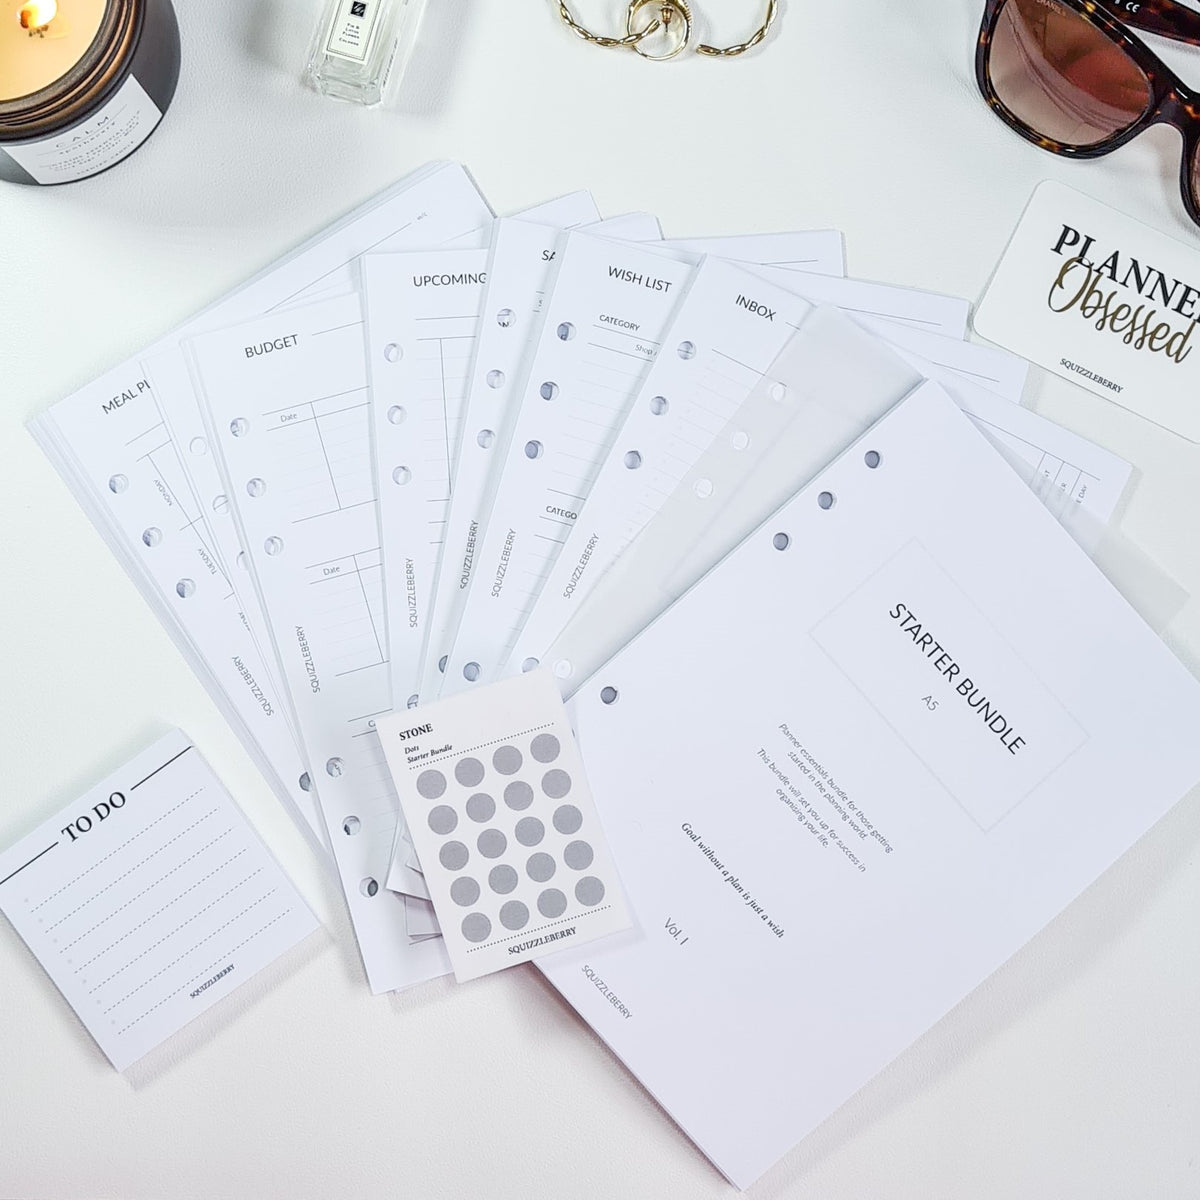 Planner starter bundle in minimalist style